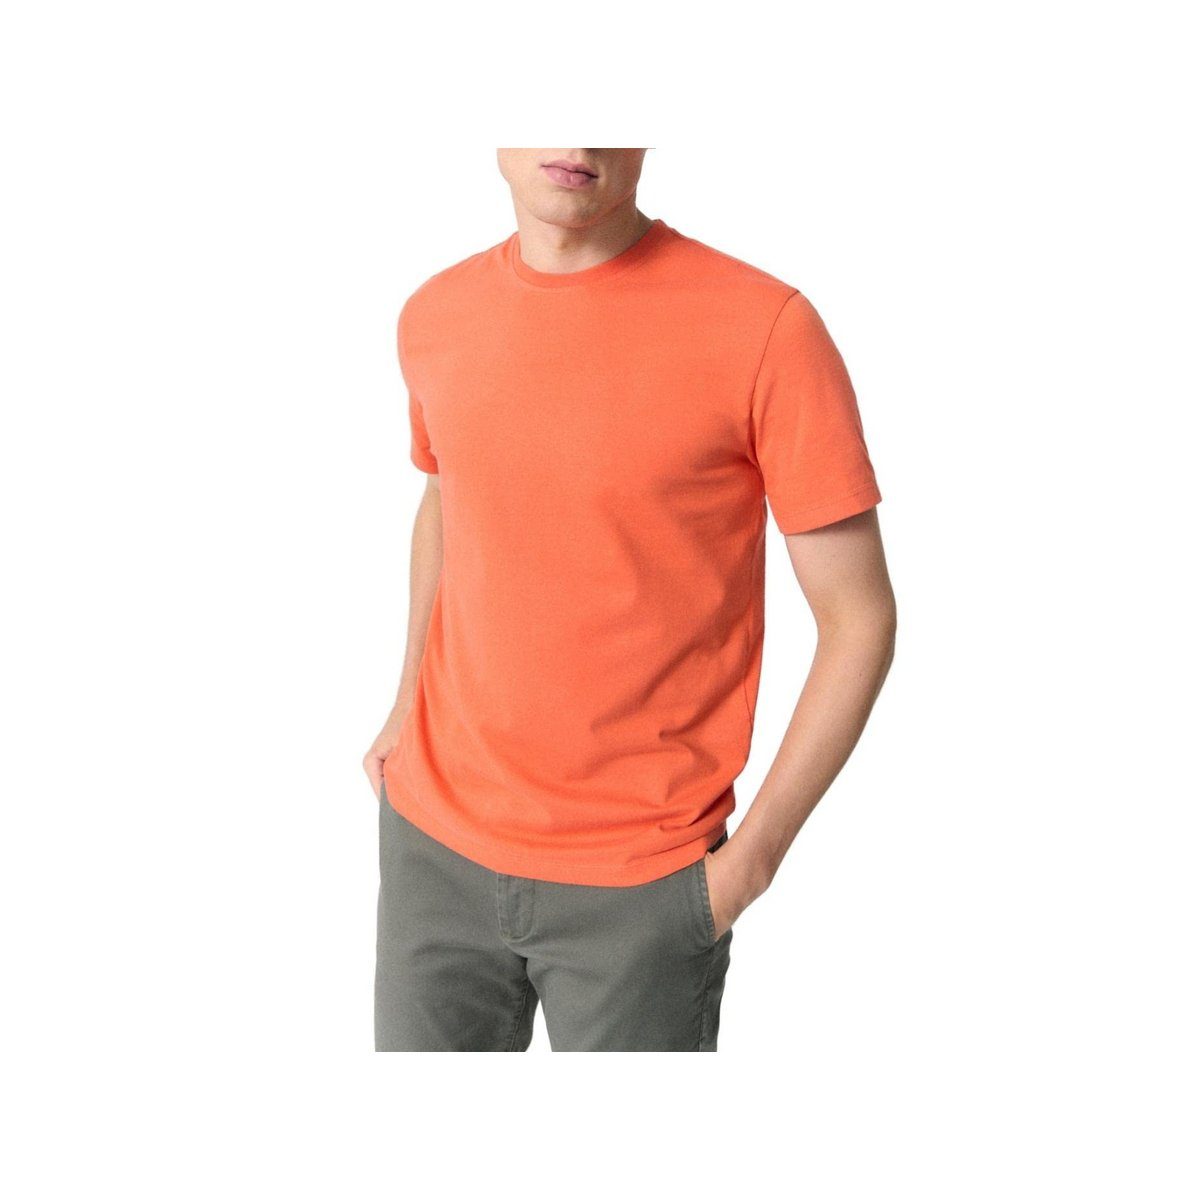 ECOALF T-Shirts für Herren online kaufen | OTTO